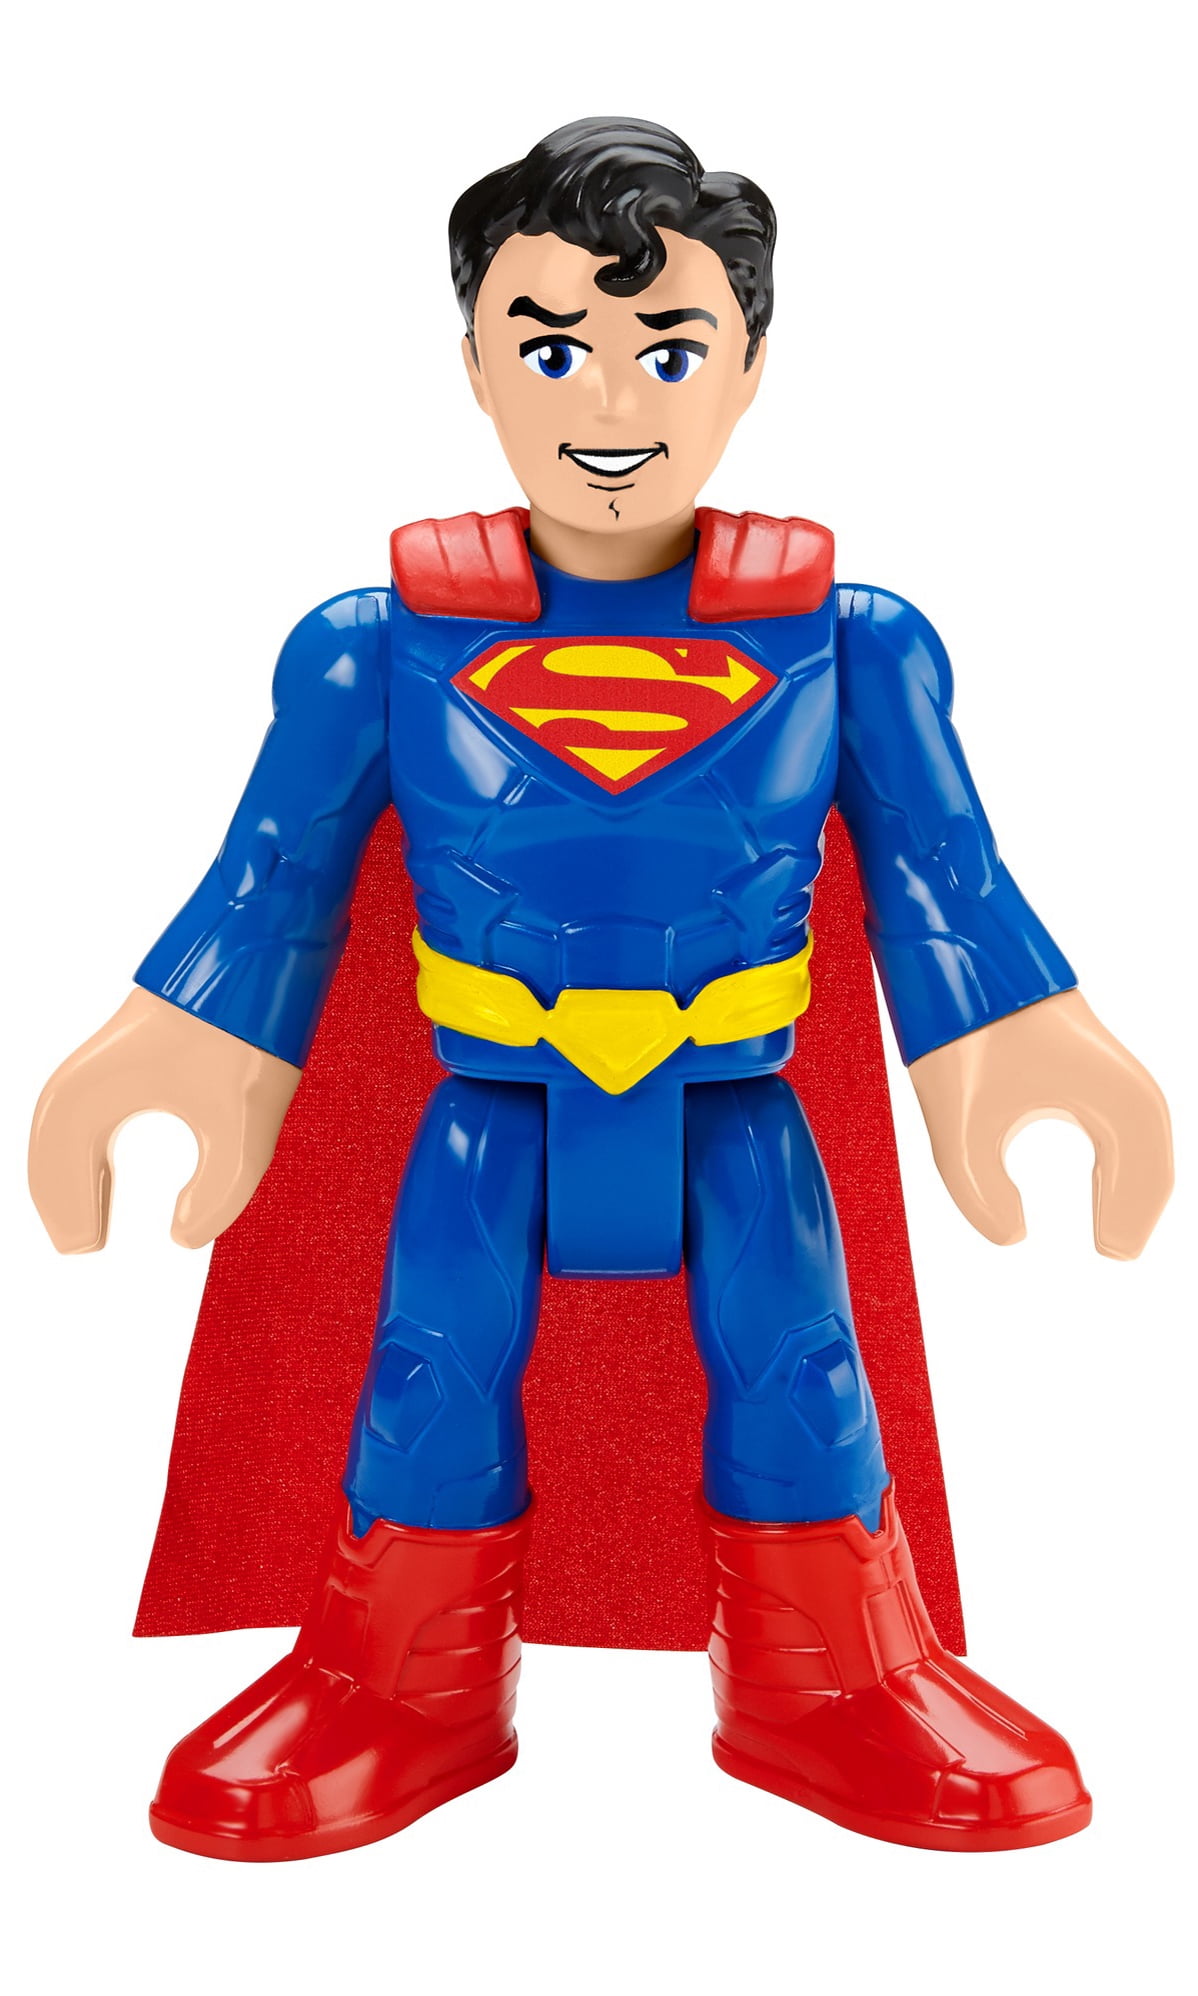 Details about   Imaginext DC Super Friends SUPERMAN figure in armor 